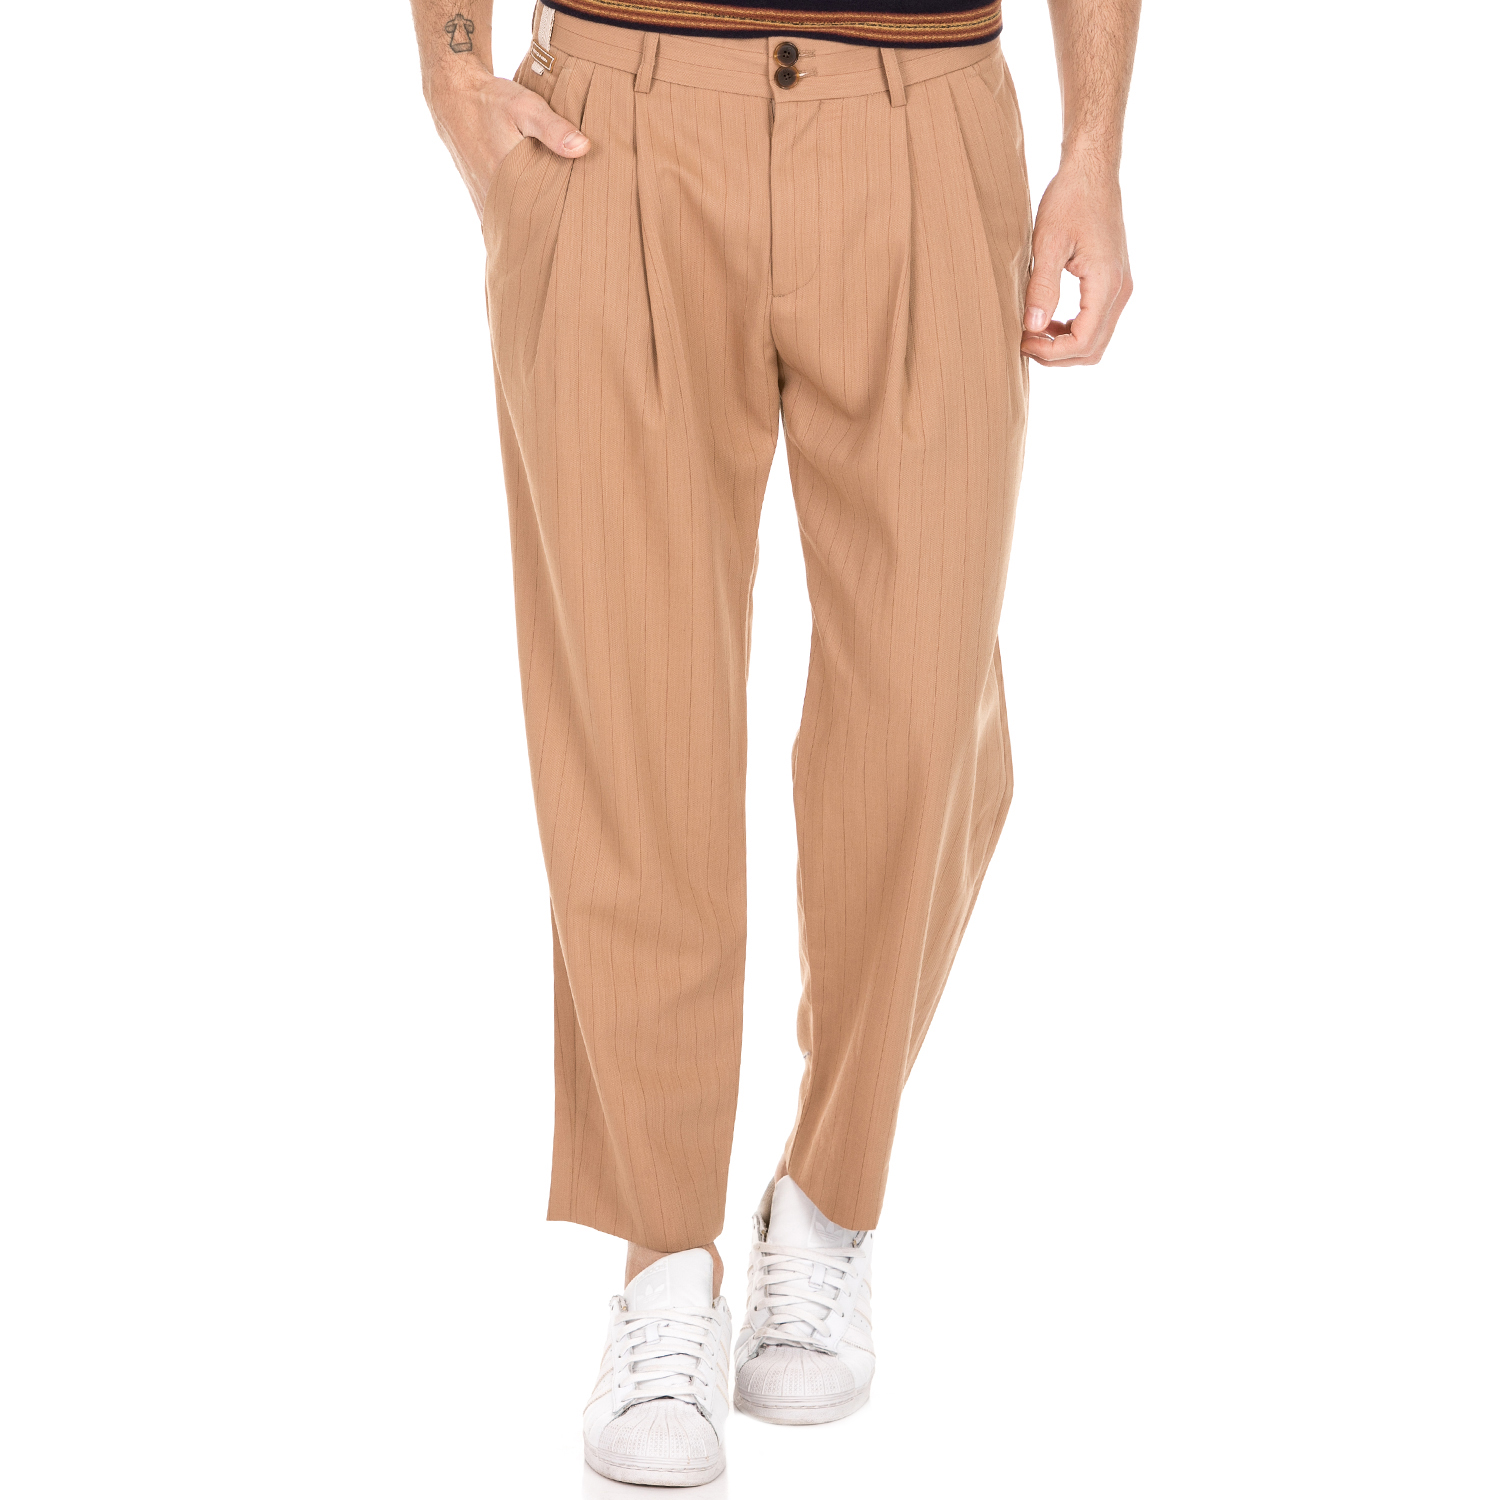 Ανδρικά/Ρούχα/Παντελόνια/Φαρδιά Γραμμή SCOTCH & SODA - Ανδρικό παντελόνι SCOTCH & SODA καφέ